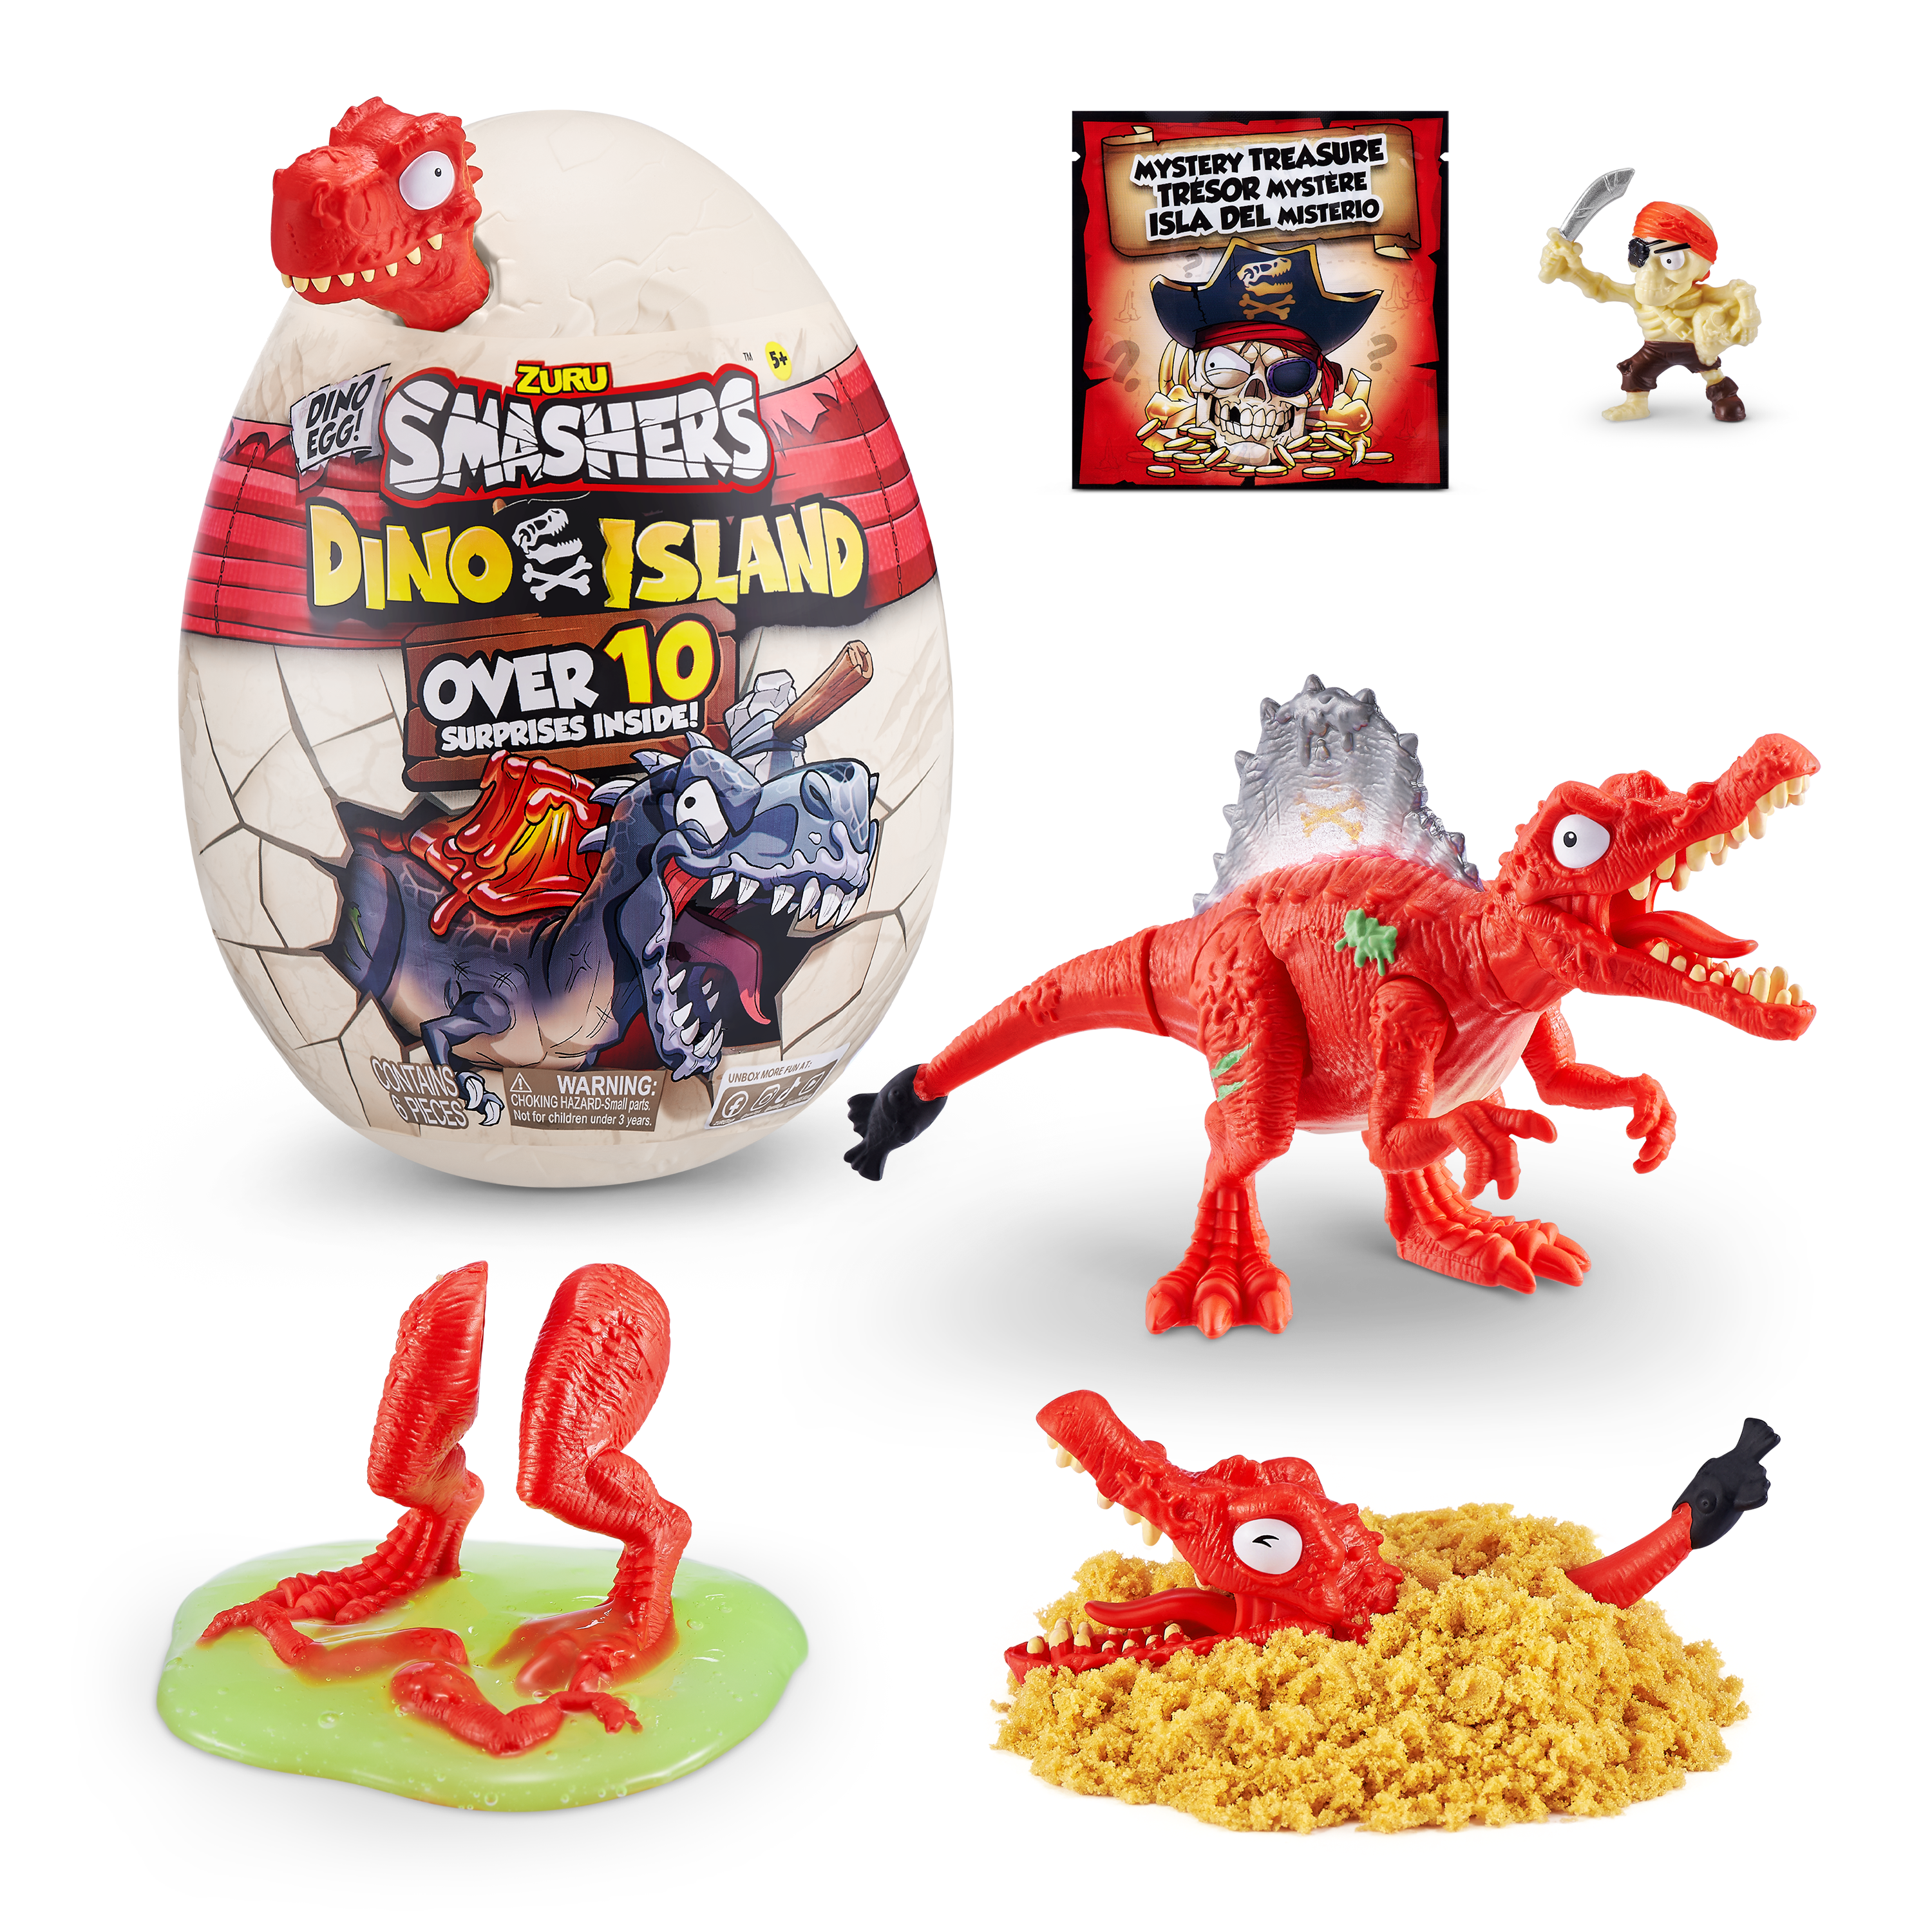 Игровой набор  Smashers Dino Island сюрприз в яйце малое яйцо, 10 сюрпризов Динозавр красный— магазин-салютов.рус